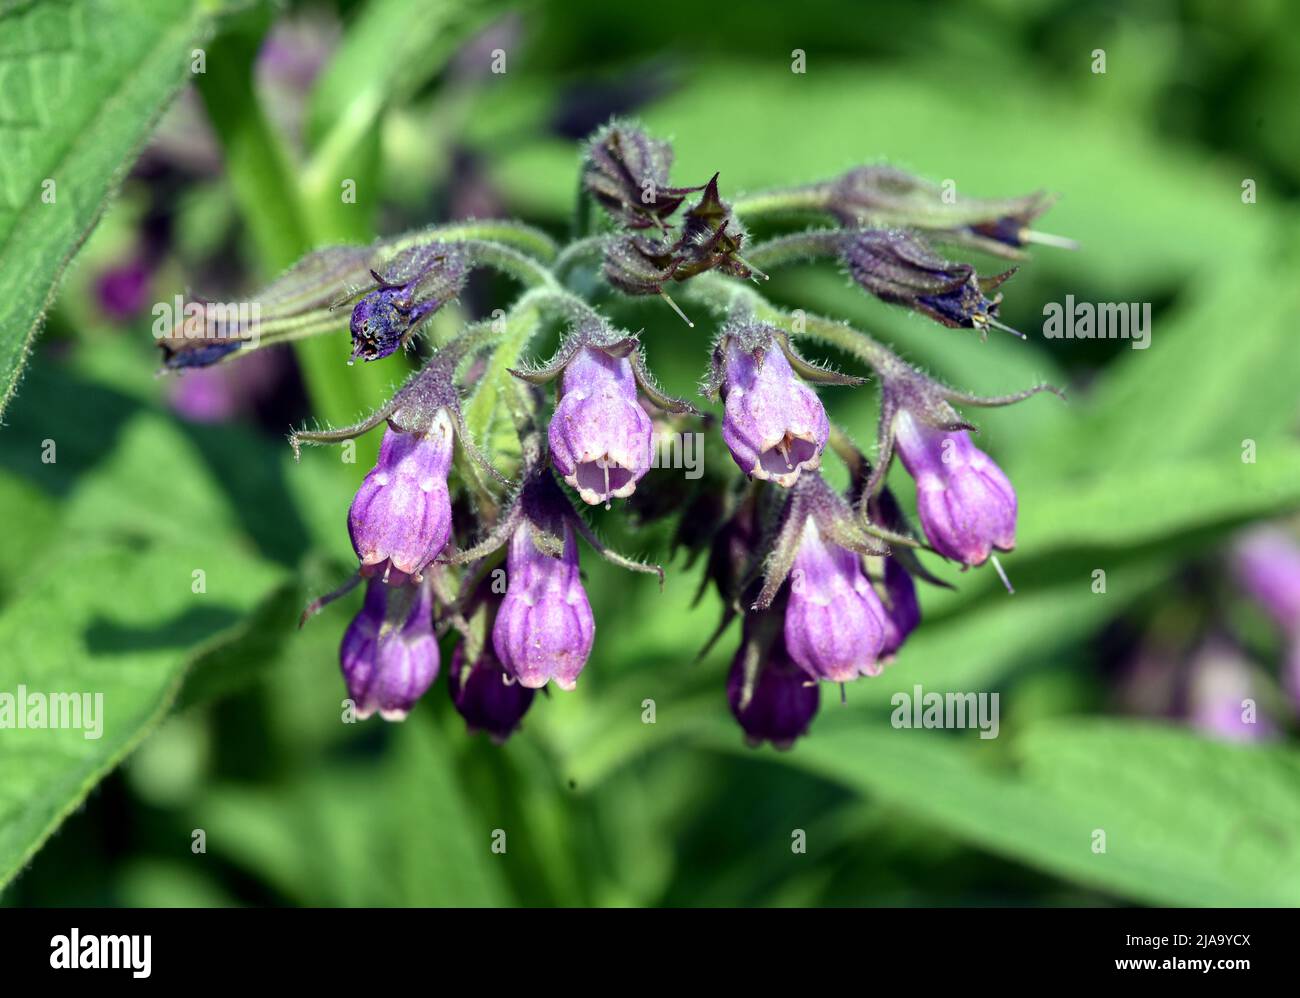 Beinwell, Symphytum, officinale, ist eine Wildpflanze mit weissen oder lila Blueten. Sie ist eine wichtige Heilpflanze und wird auch in der Medizin ve Stock Photo